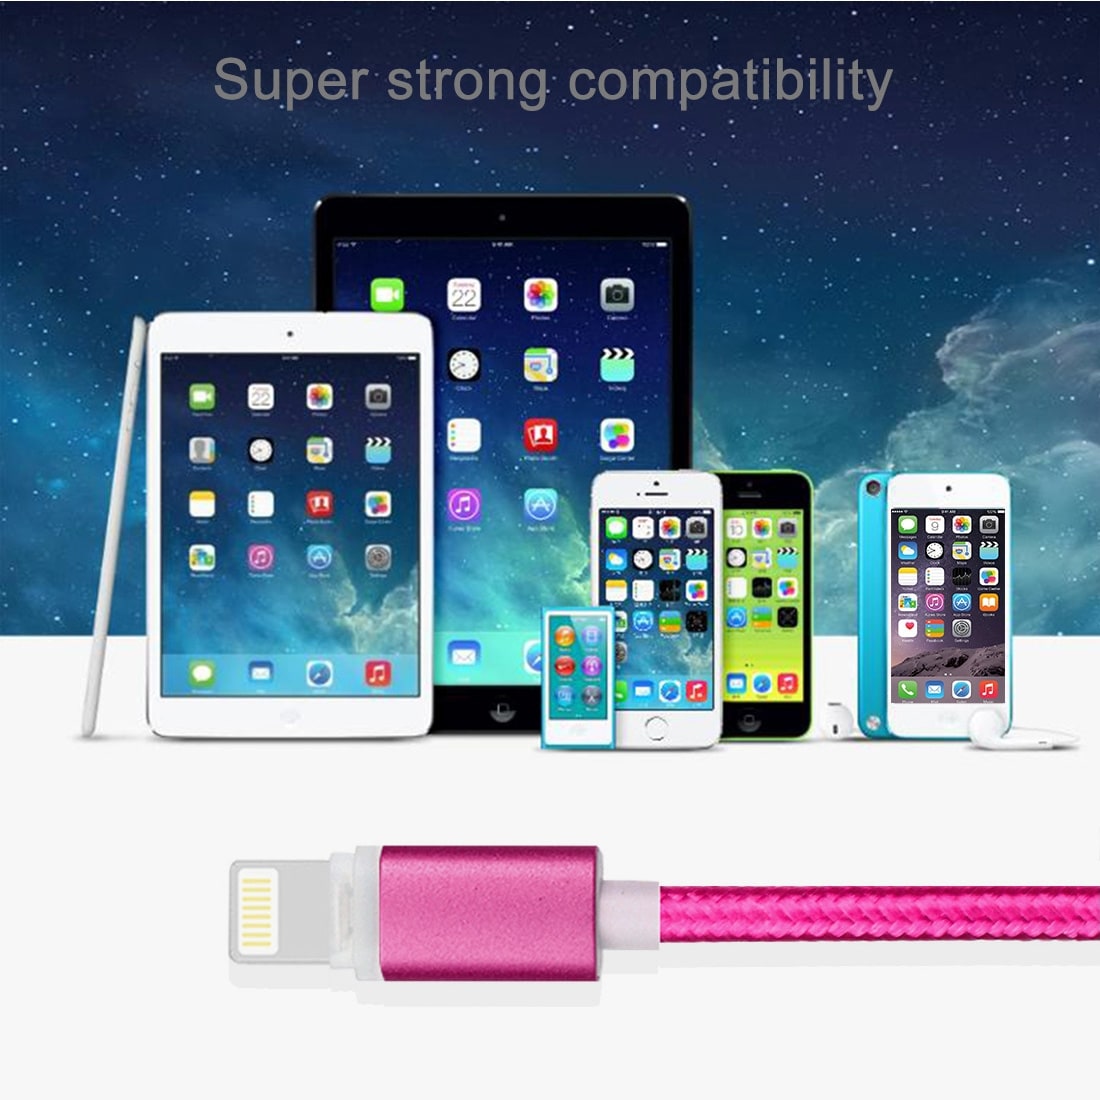 Robust stoffkledd Usbkabel iPhone 5/6/7 med metallhode - Storpakk 8stk i ulike farger